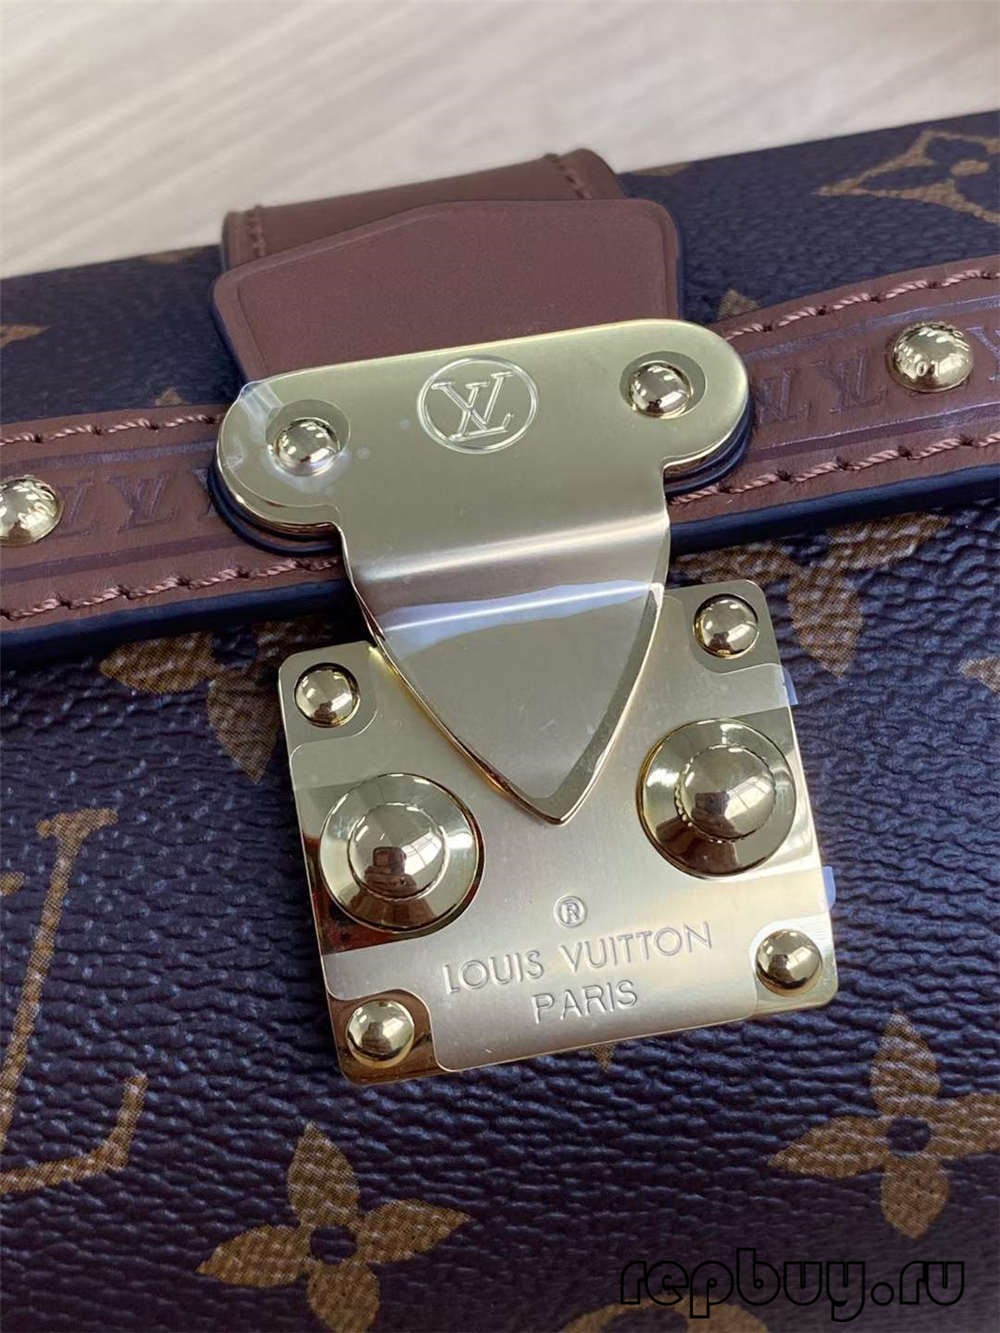 Louis Vuitton M57835 PAPILLON TRUNK borse replica di alta qualità (Aggiornato 2022)-Best Quality Fake Louis Vuitton Bag Online Store, Replica designer bag ru